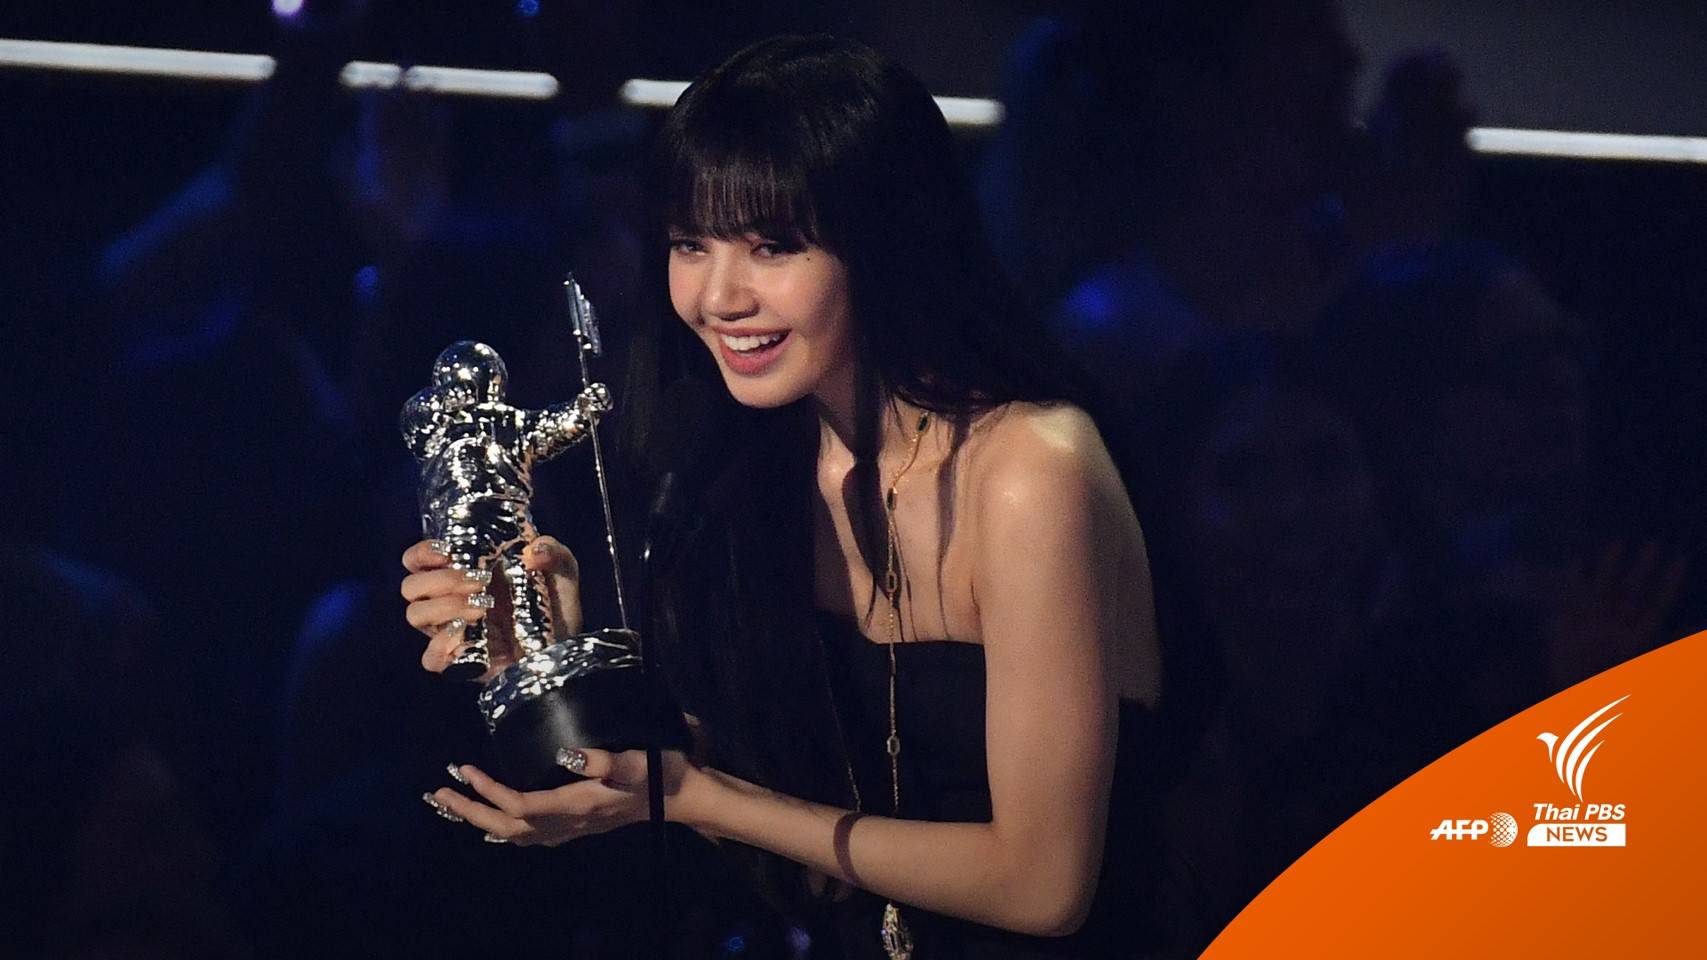 ลิซ่า BLACKPINK คว้ารางวัล "BEST K-POP" จาก VMAs 2022